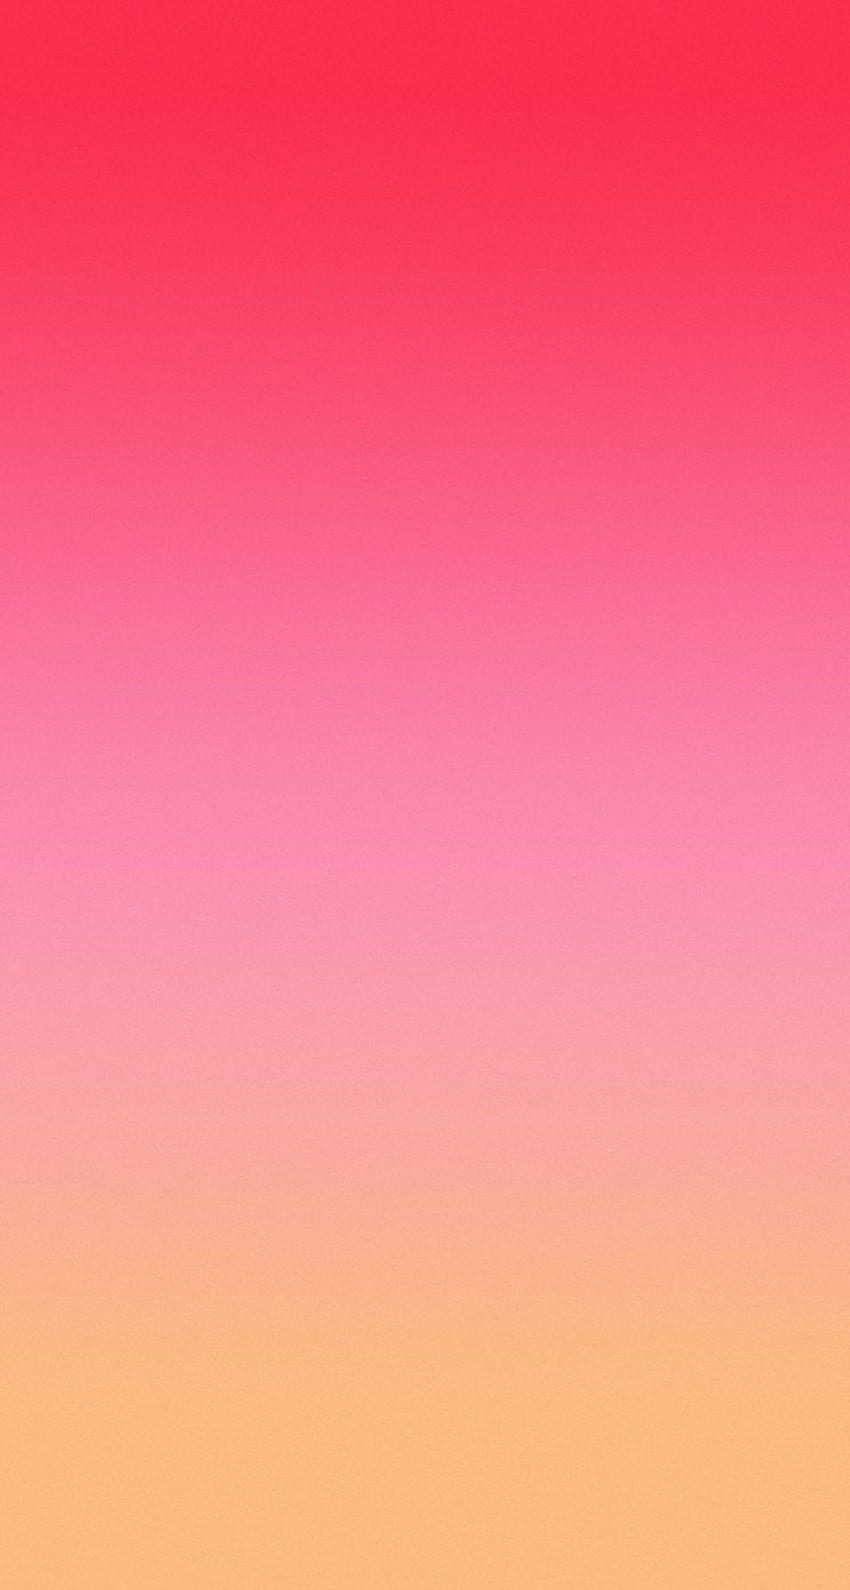 Với màu hồng đơn giản nhưng lại rất tươi sáng, hình nền iPhone này sẽ khiến bất cứ ai nhìn vào cũng thích thú. Thiết kế siêu đáng yêu này chắc chắn sẽ giúp nâng cao tâm trạng và tràn đầy sự lạc quan trong cuộc sống. 